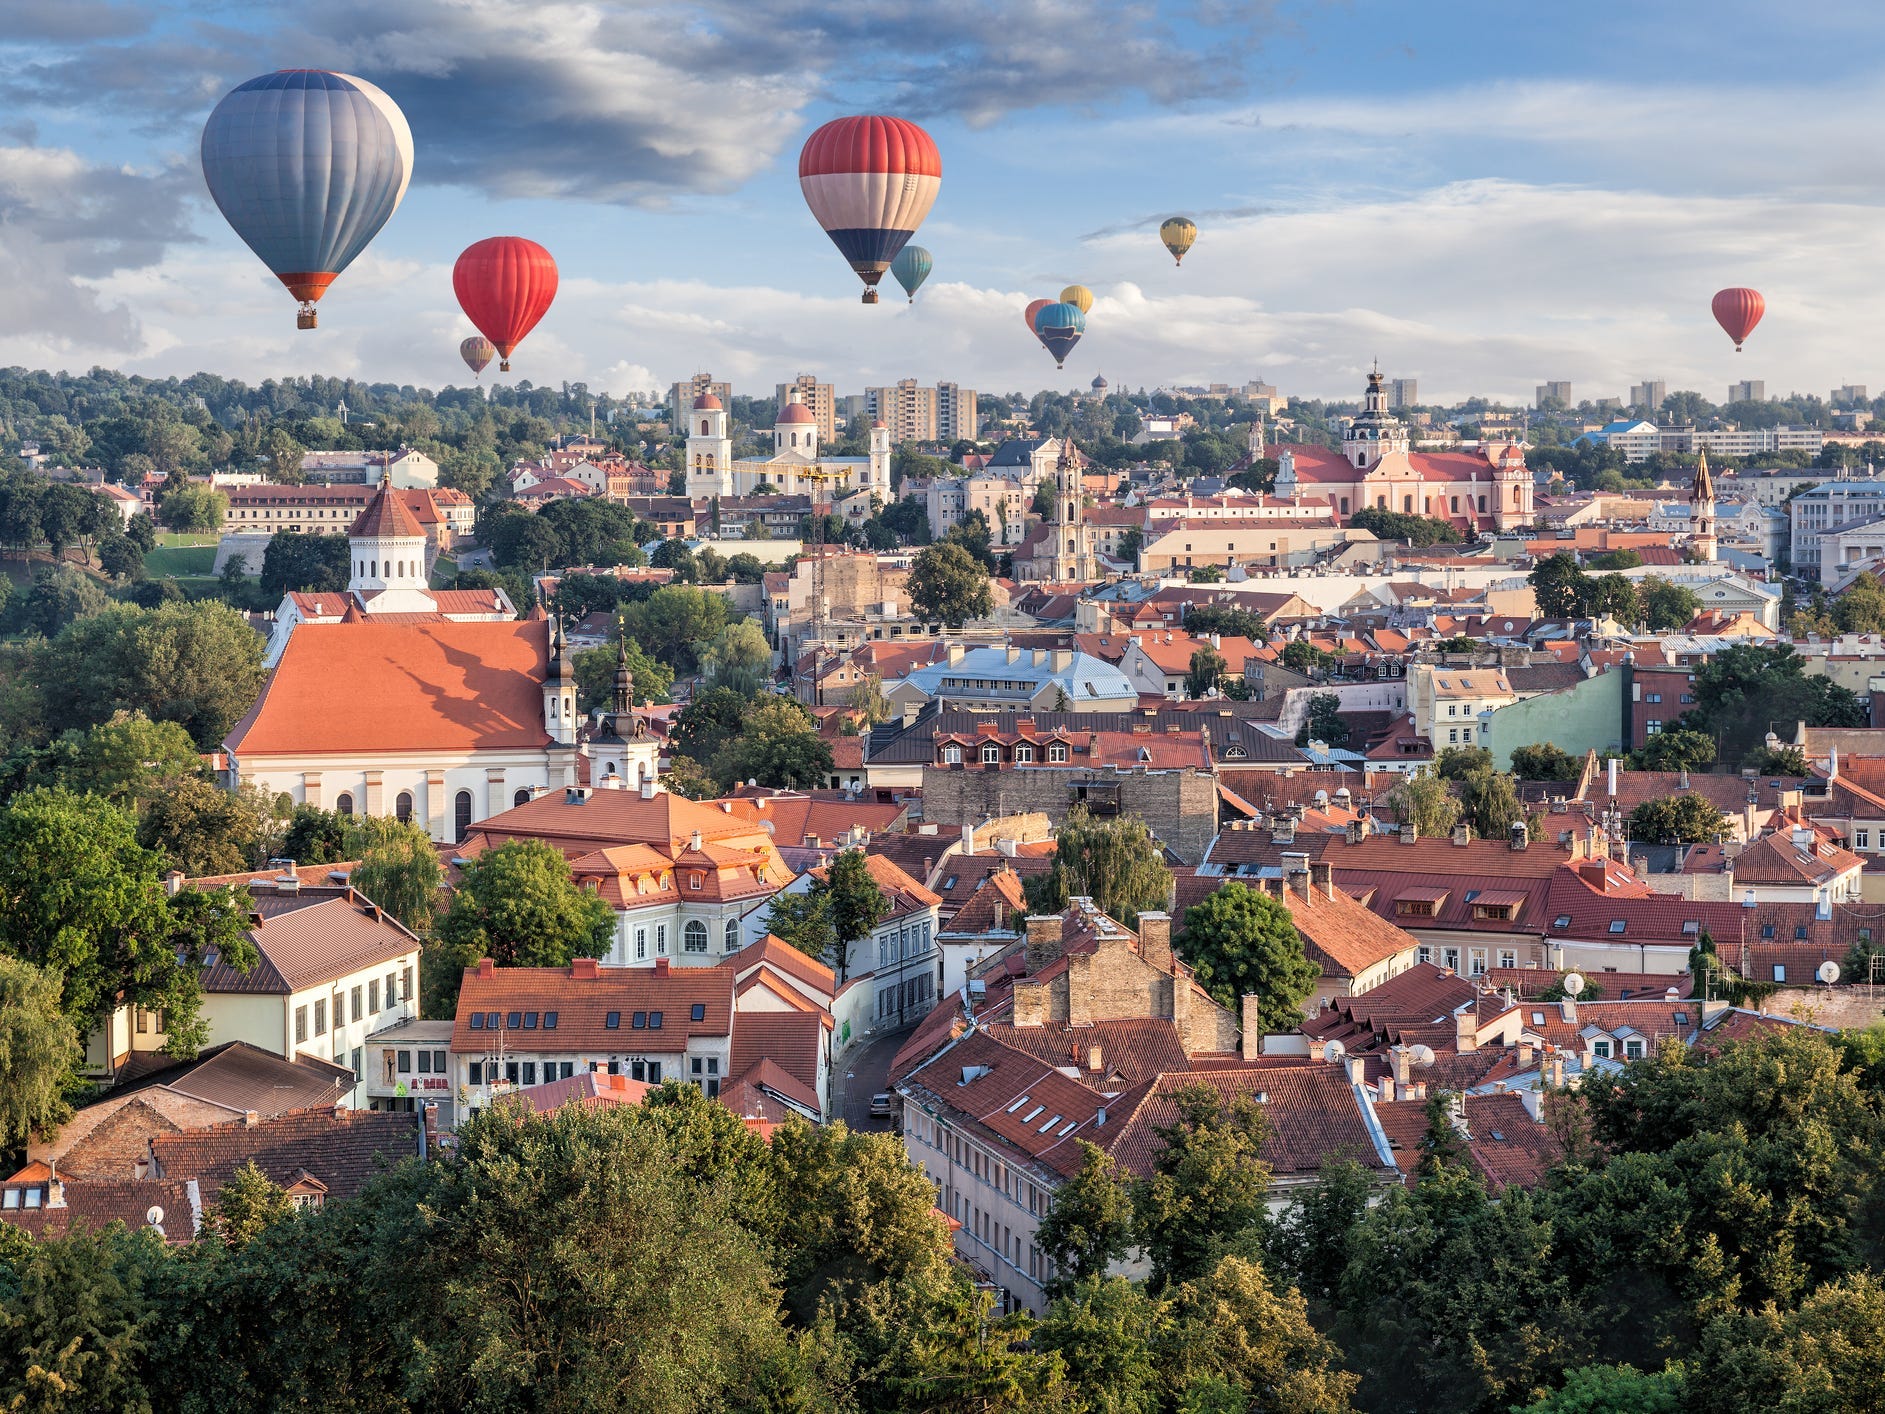 Ballons über Vilnius, der Hauptstadt Litauens.